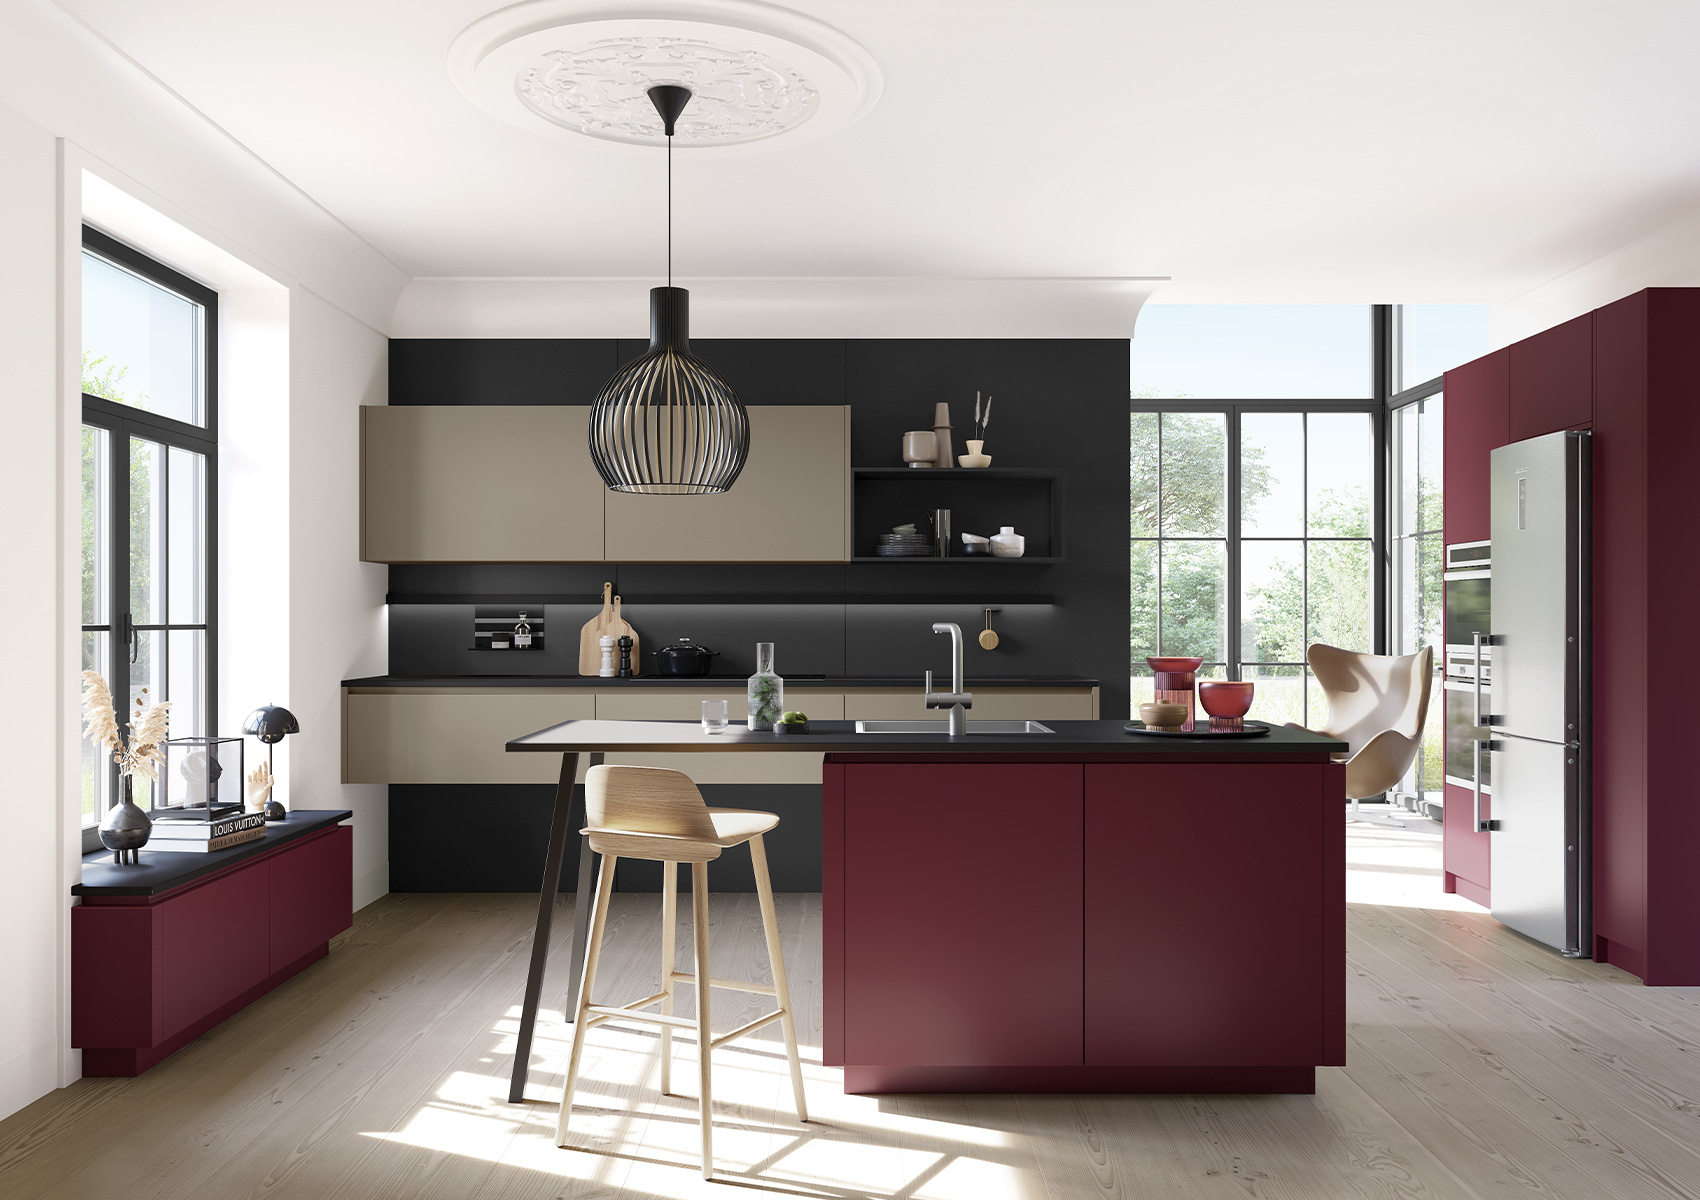 Die Küche in der Selection Farbe Burgund in Kombination mit Umbra-natur